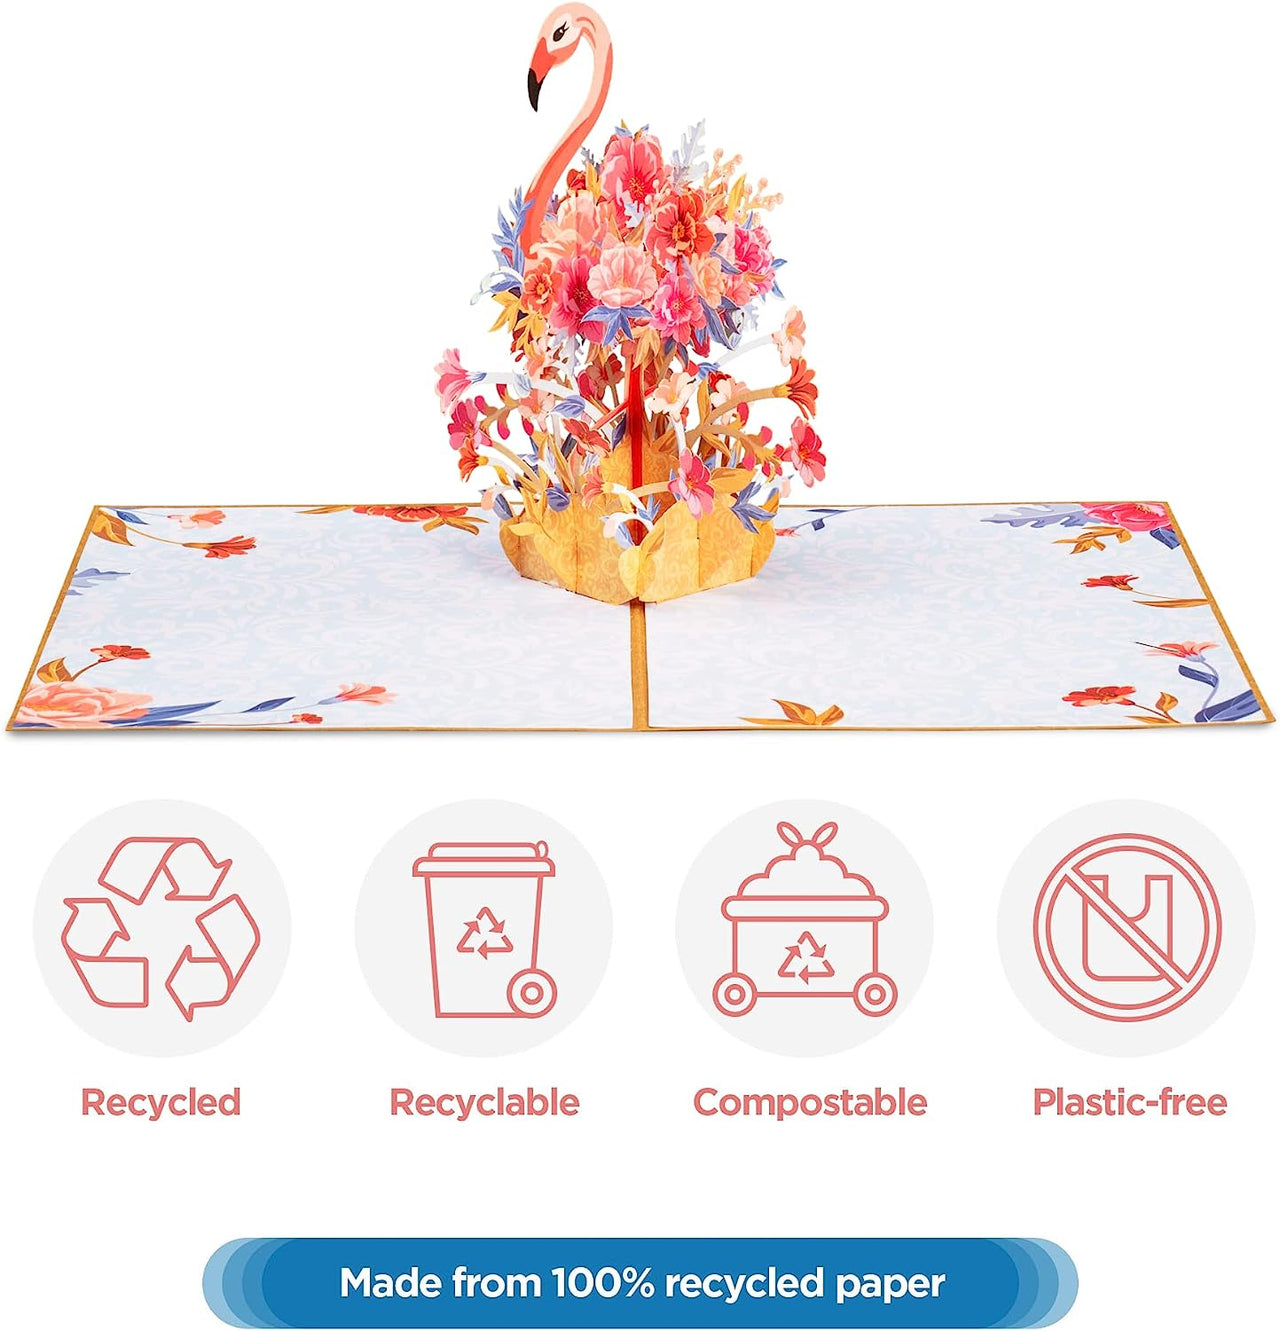 Floral Flamingo Pop Up Card - Frndly 8"x6"